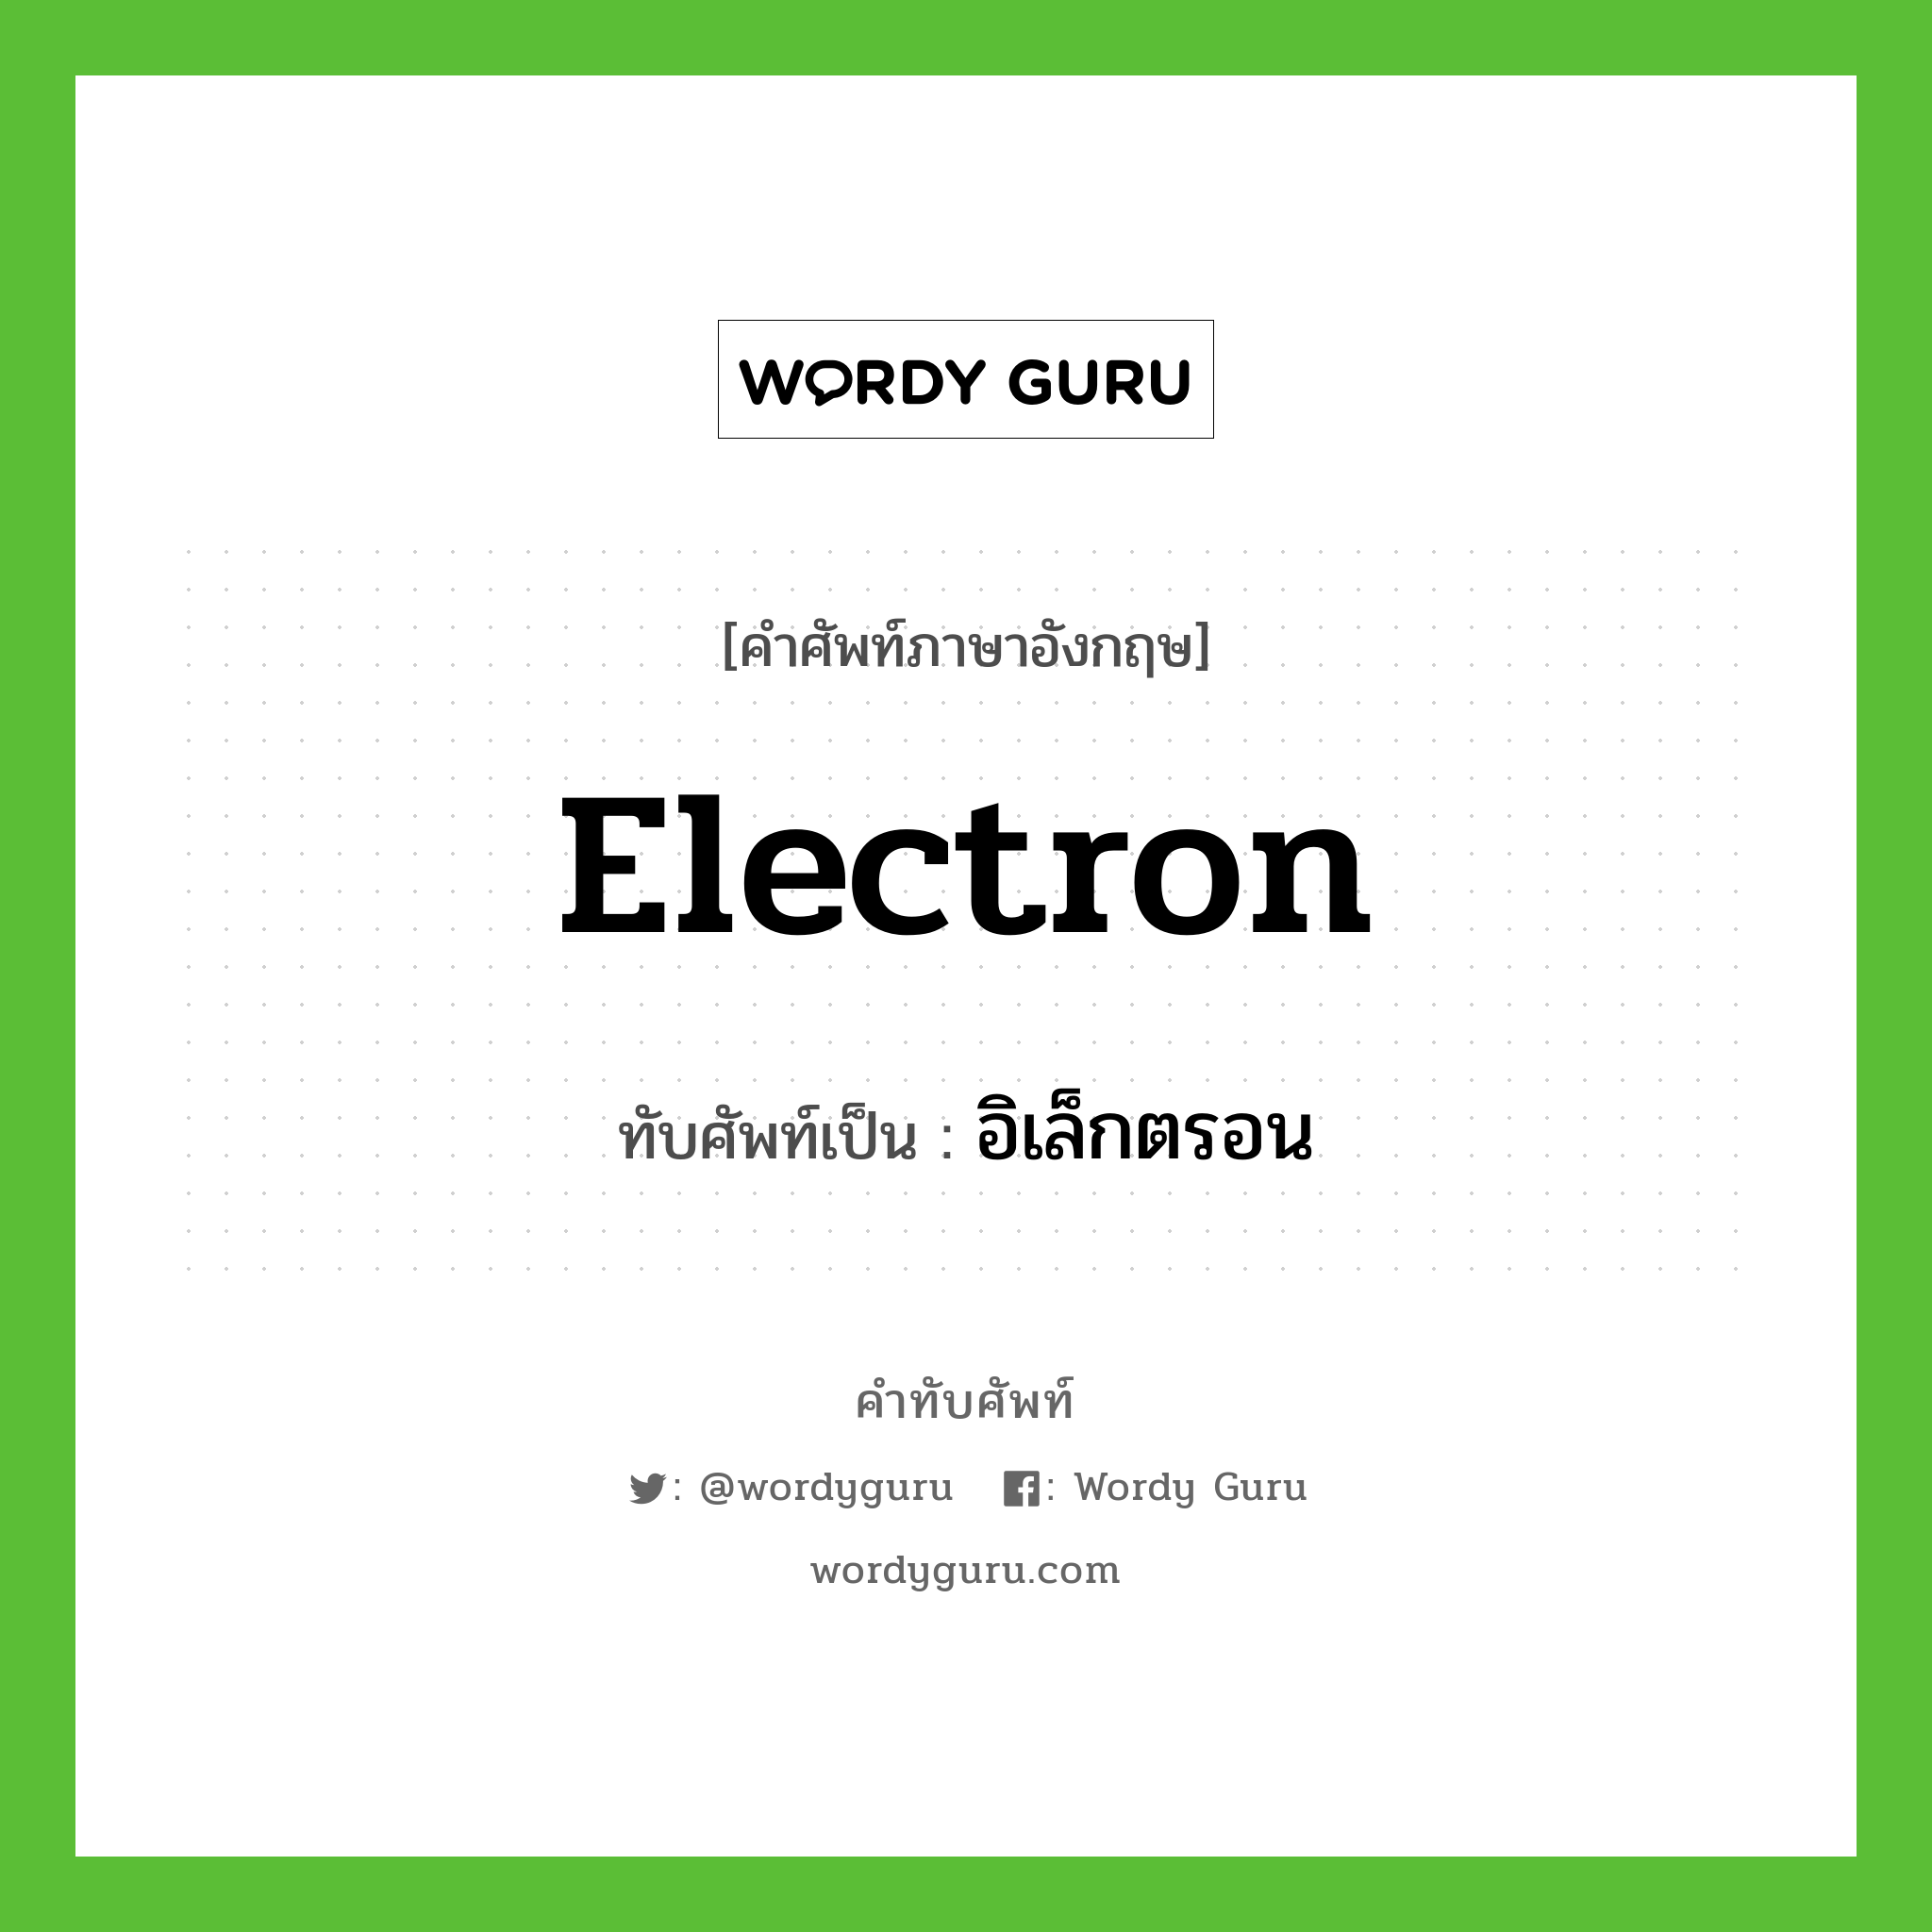 electron เขียนเป็นคำไทยว่าอะไร?, คำศัพท์ภาษาอังกฤษ electron ทับศัพท์เป็น อิเล็กตรอน